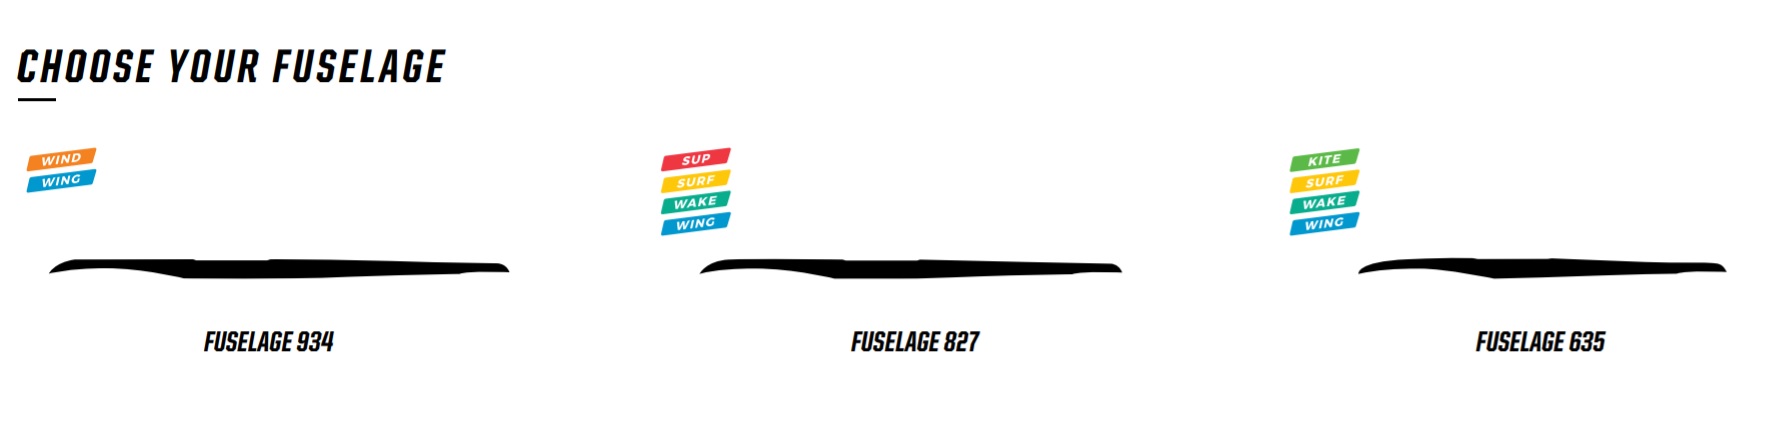 fuselage.jpg